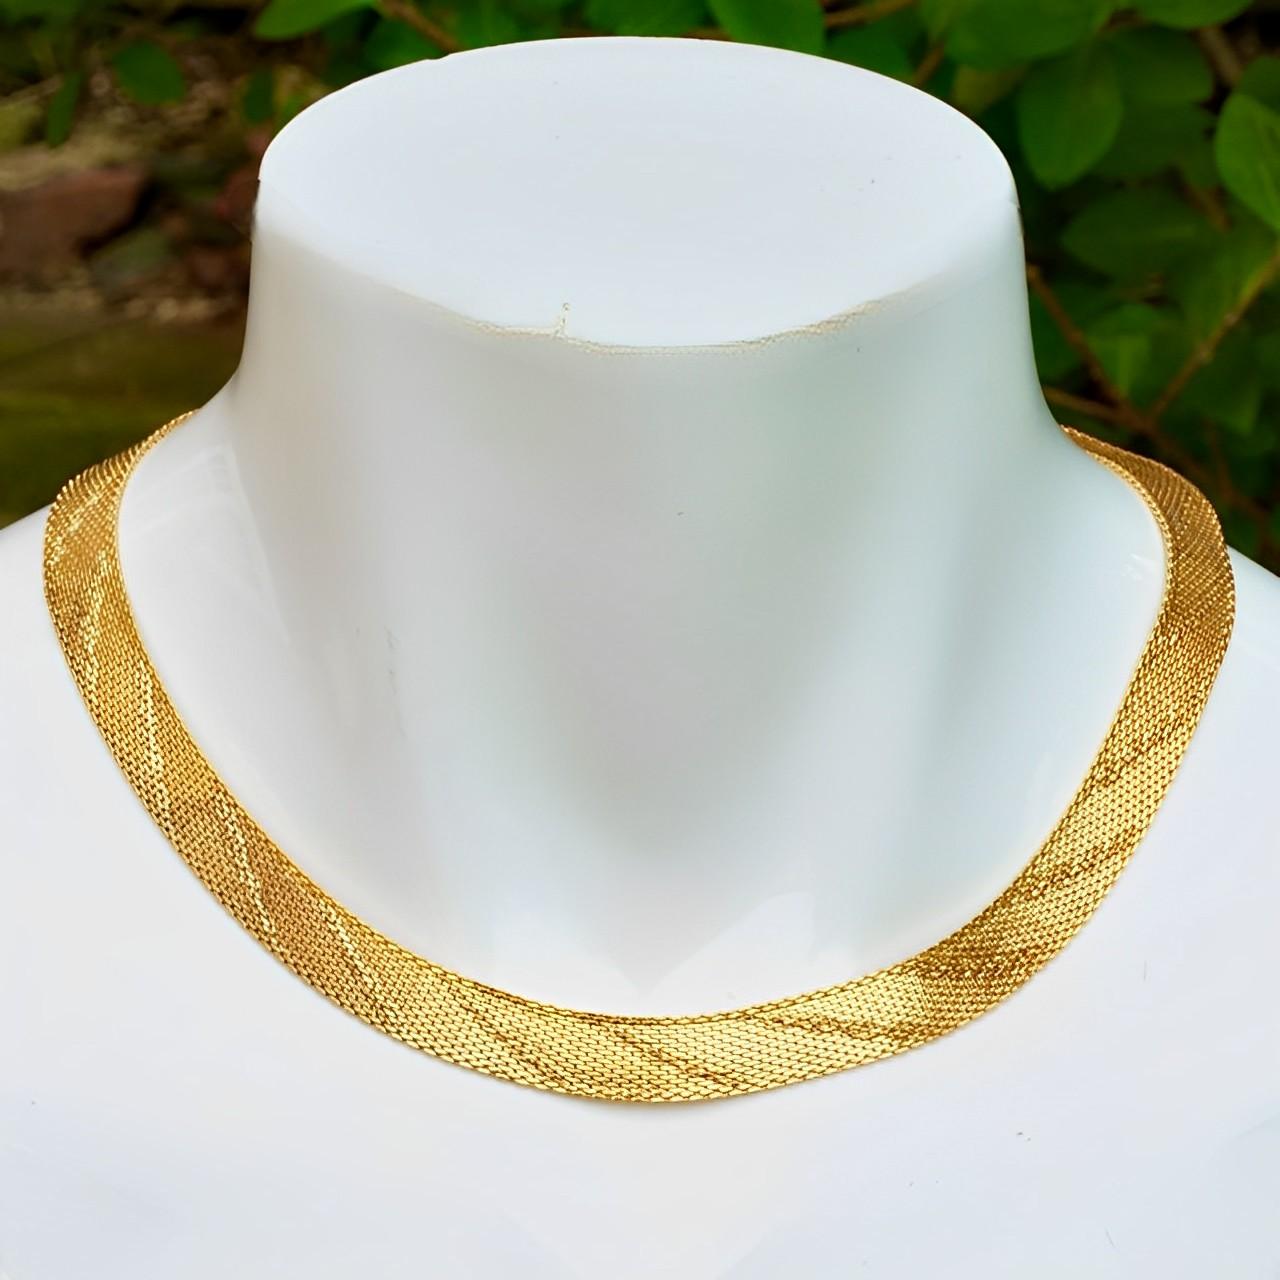 Wunderschöne vergoldete, strukturierte Mesh-Halskette mit einem kontrastierenden, glänzenden Linien-Design. Messlänge ca. 40 cm / 15,7 Zoll plus eine Verlängerung Kette von 4,5 cm / 1,7 Zoll, durch die Breite 1 cm / .4 Zoll. Die Halskette und der